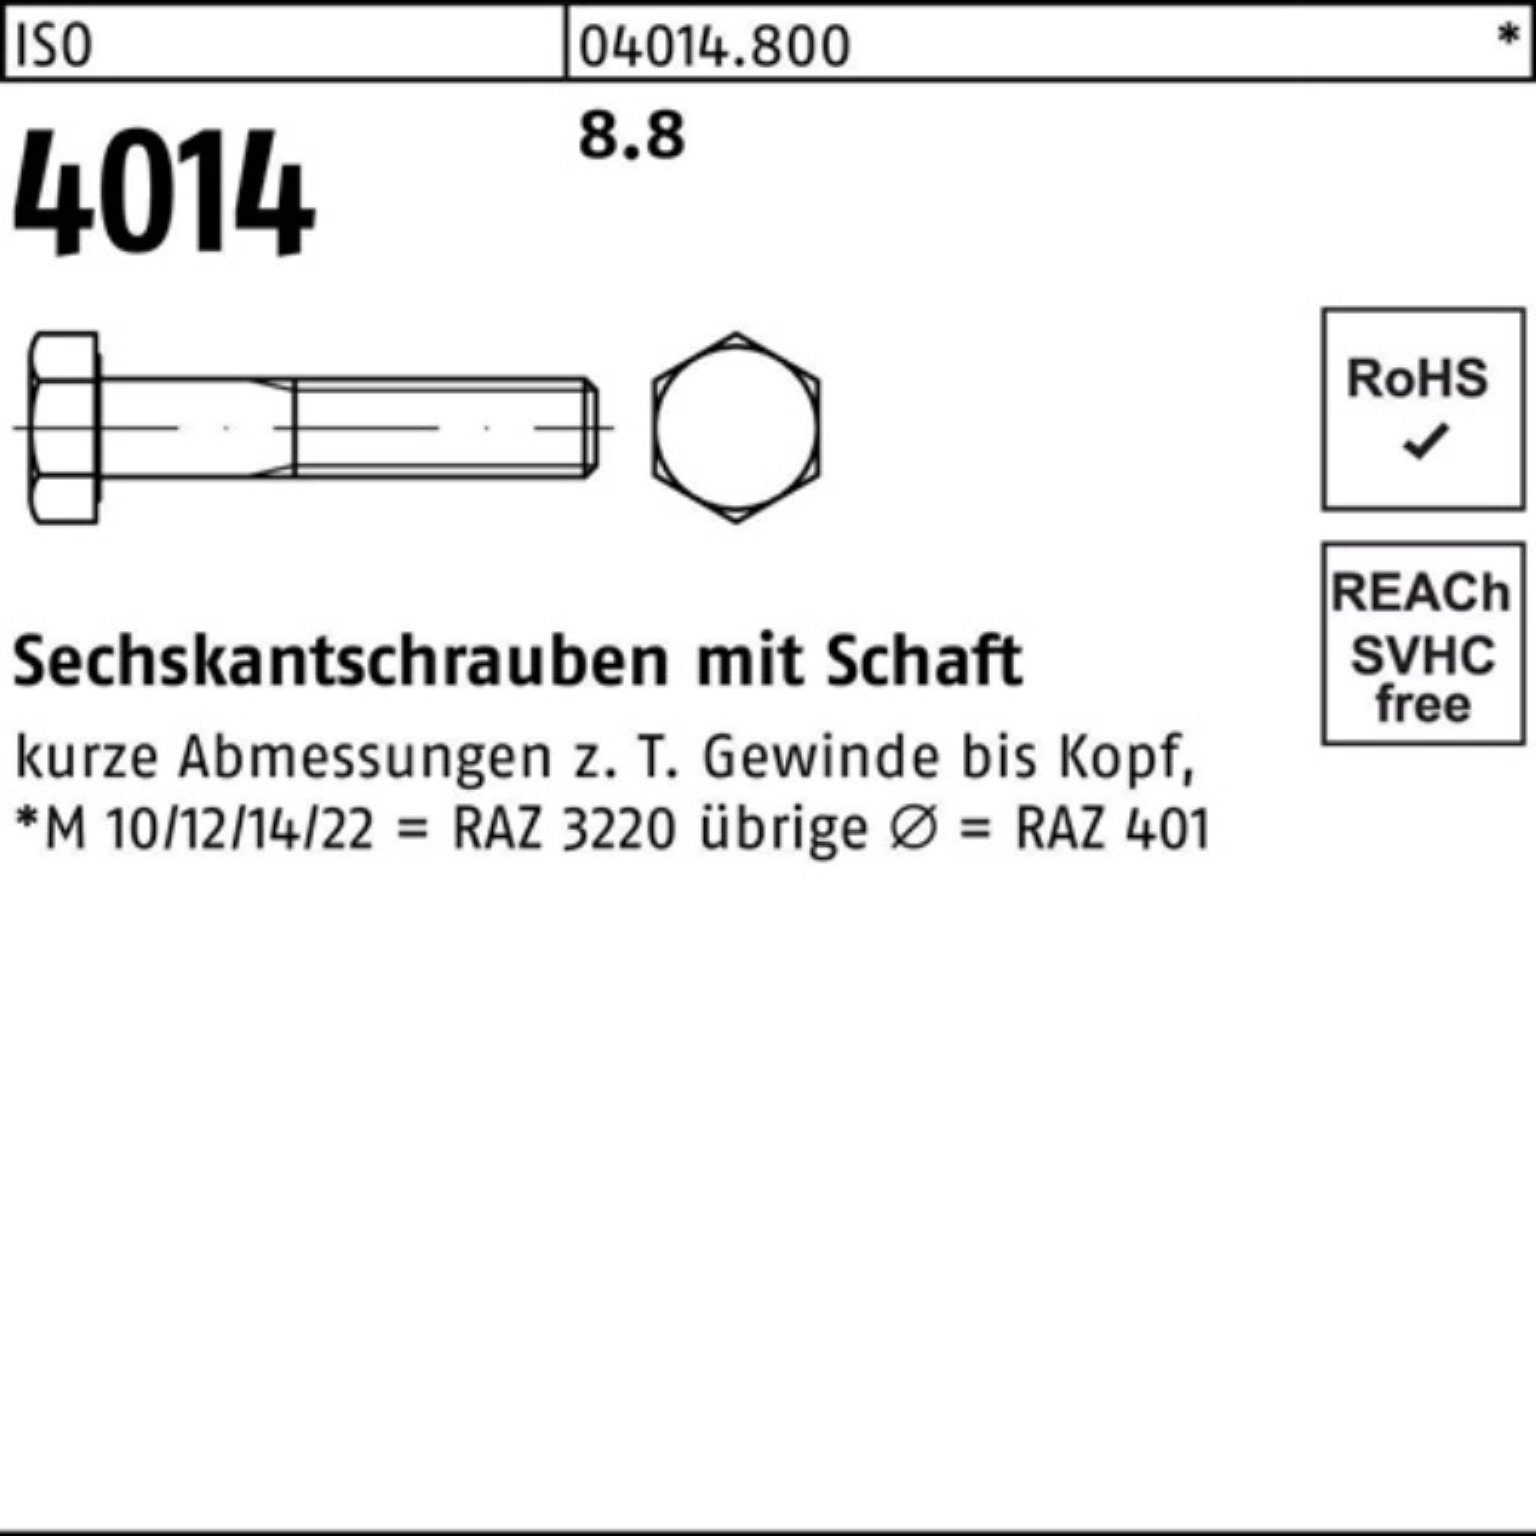 Bufab Sechskantschraube 540 Schaft 1 4014 Sechskantschraube Stück ISO 8.8 Pack ISO M36x 100er